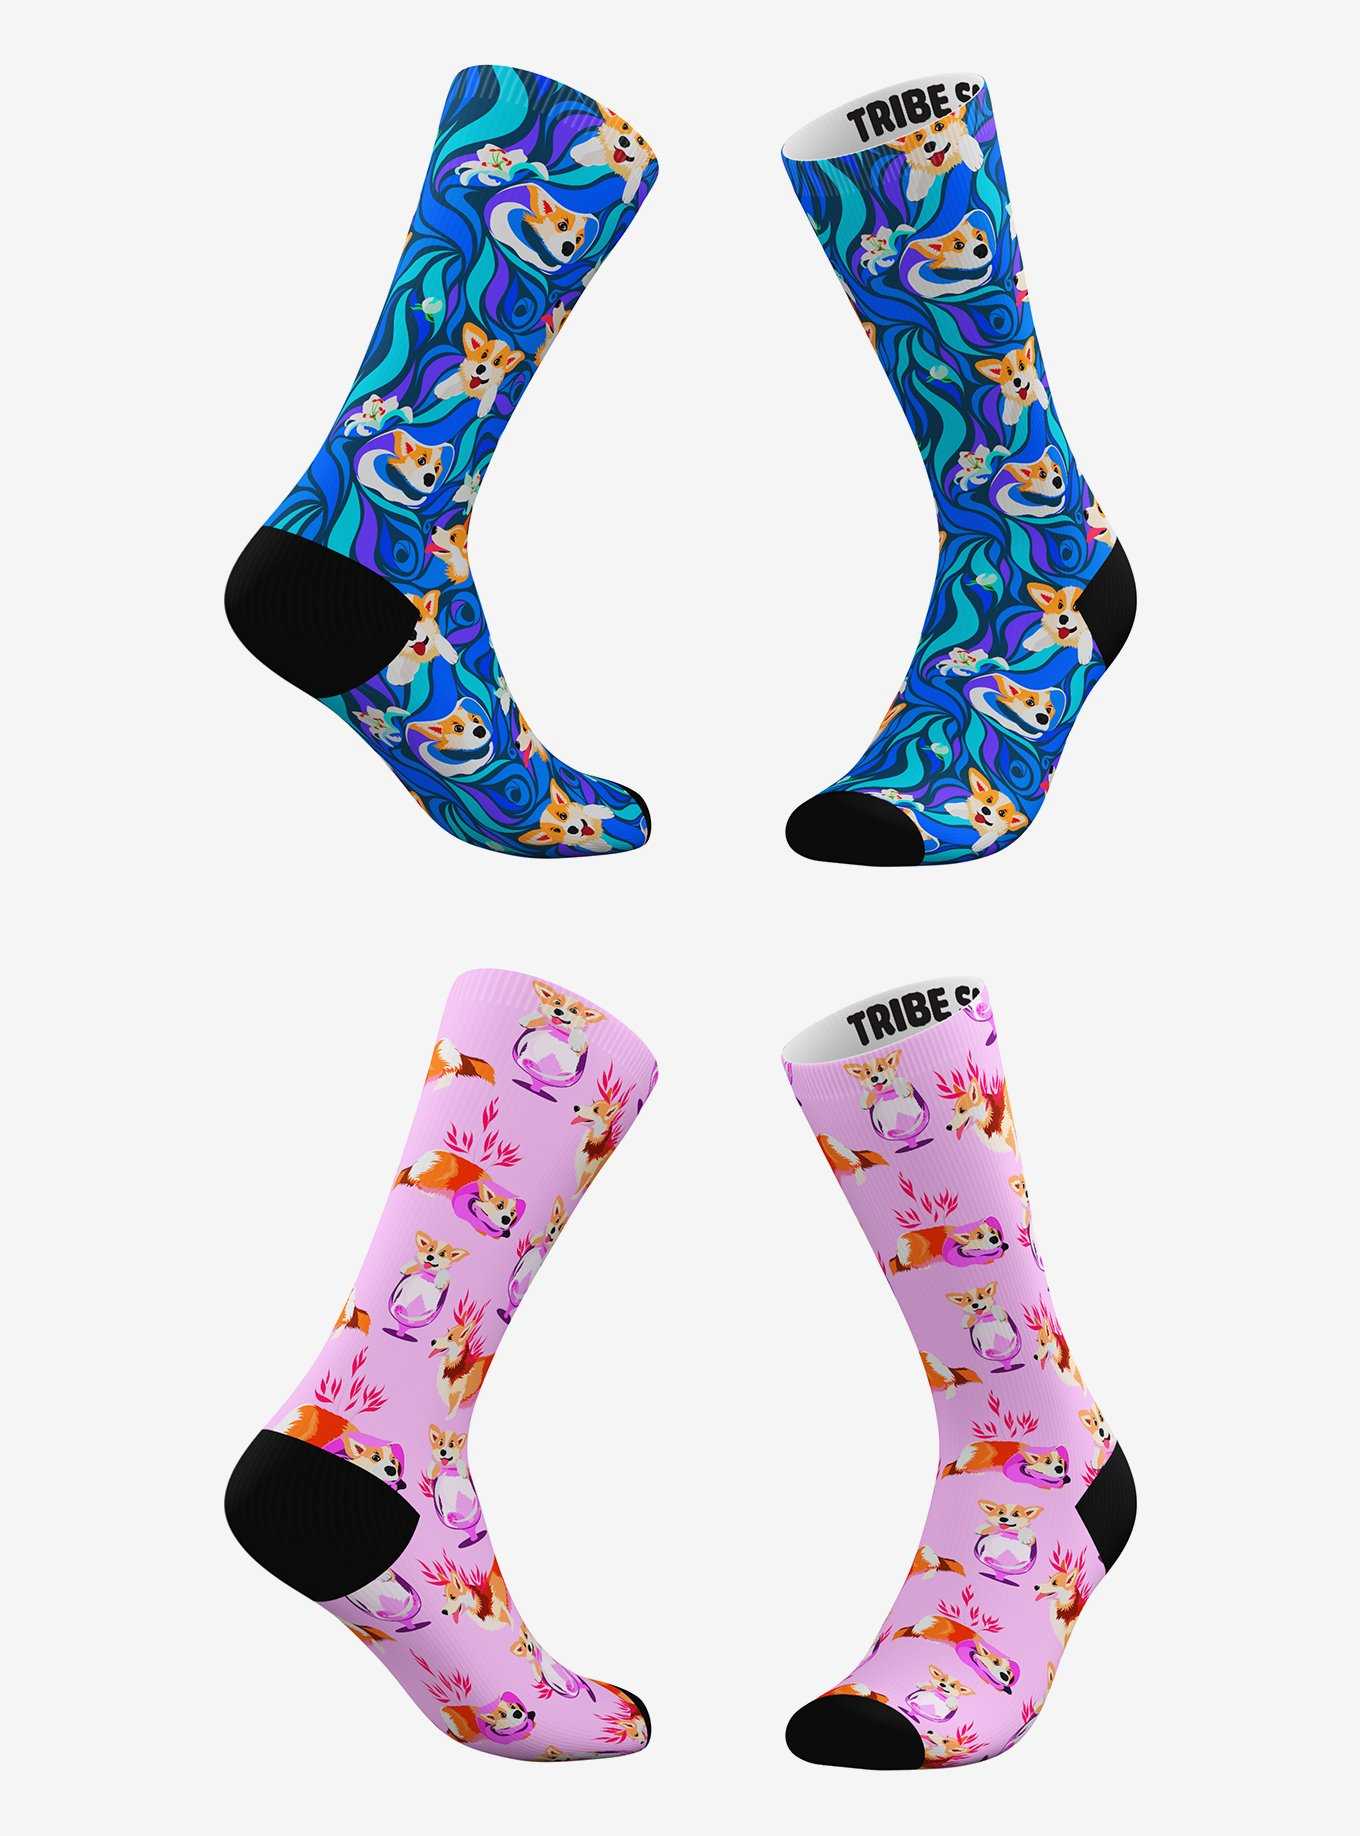 Psychadelic Corgi and Pink Corgi Socks 2 Pairs, , hi-res